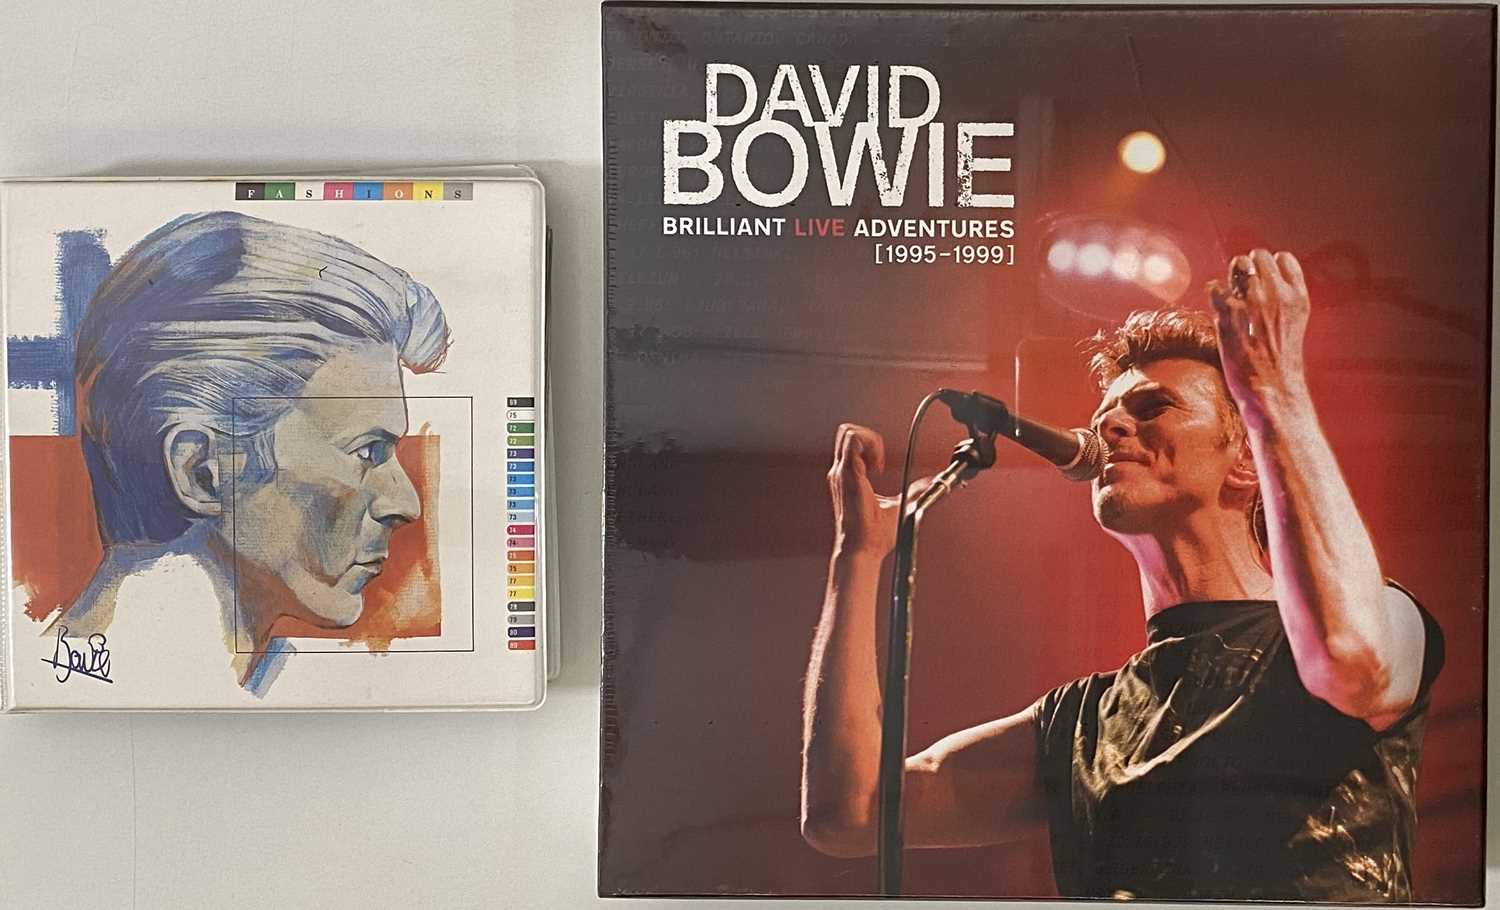 Lot 1005 - DAVID BOWIE - 7"/ LP BOX SETS